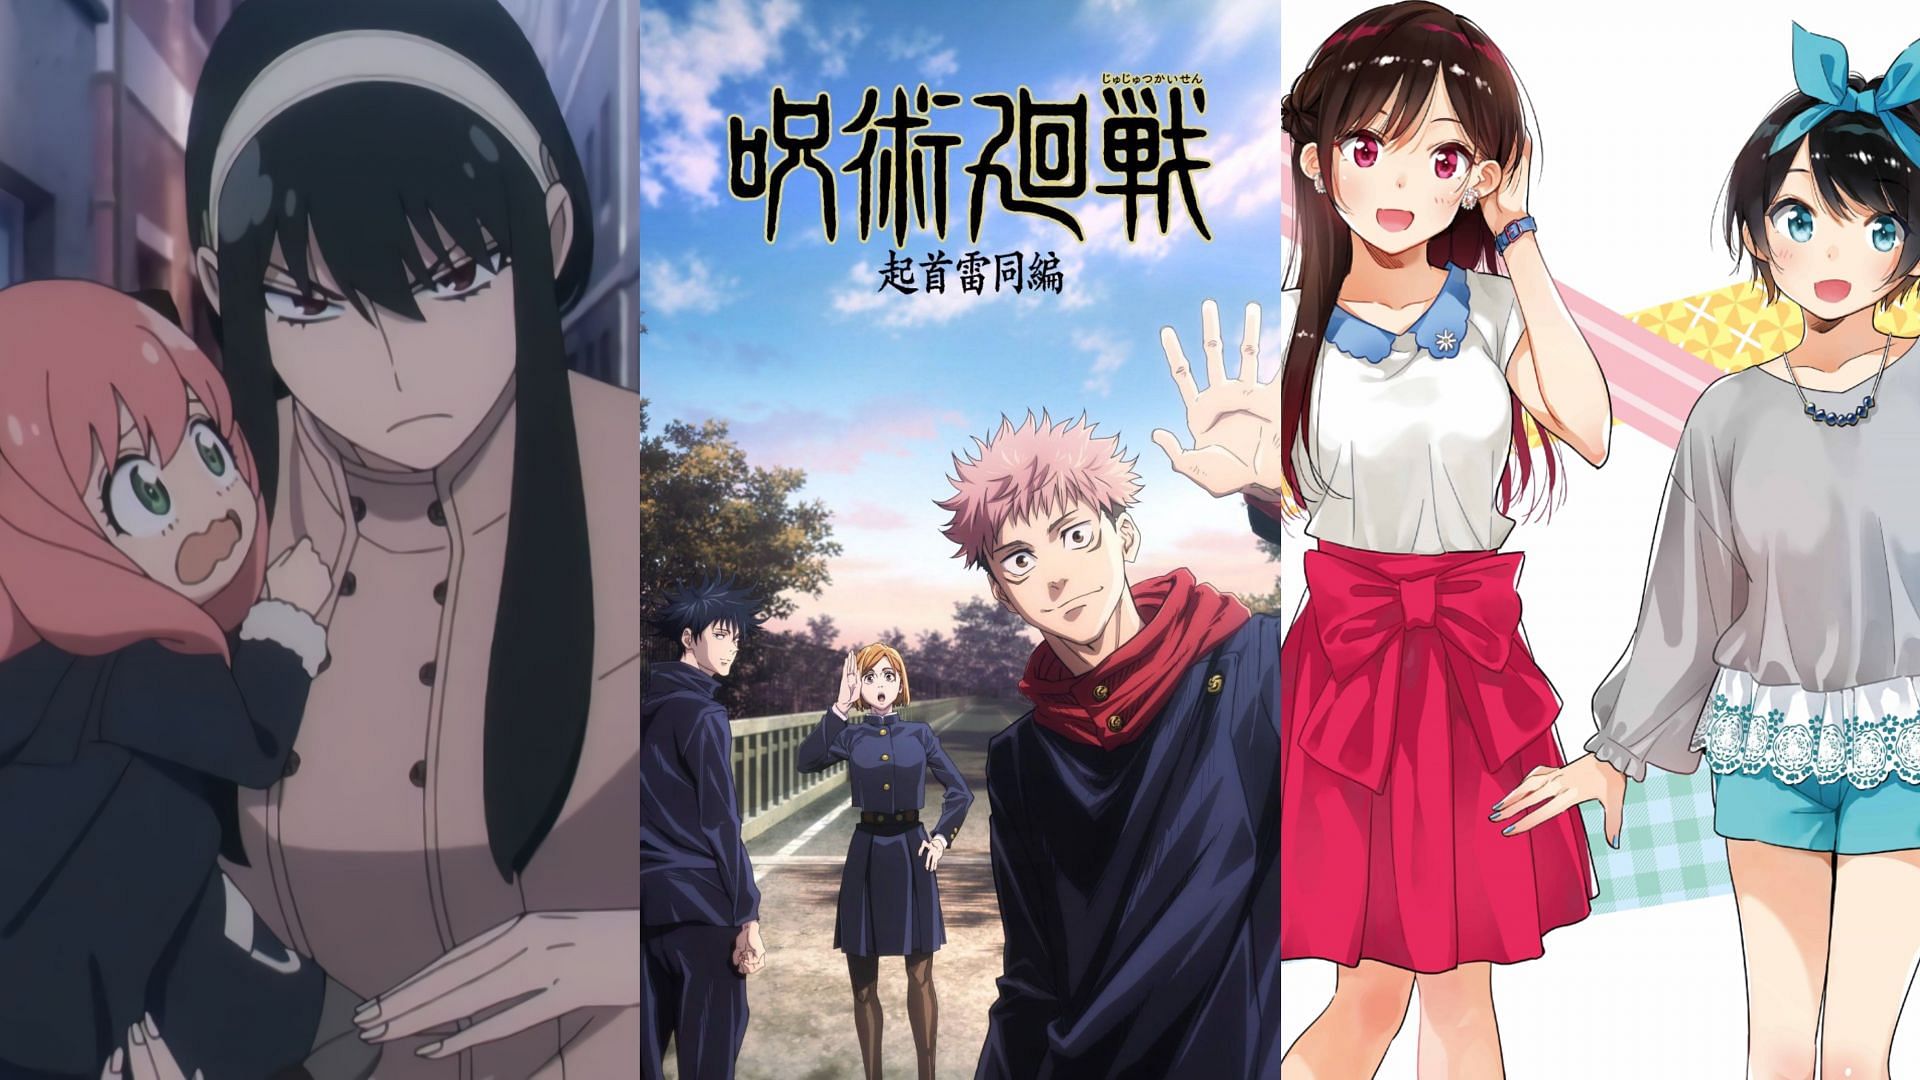 Haikyuu!!/TokyoManjiKai/JujutsuKaisen — Choose 4 Anime Characters